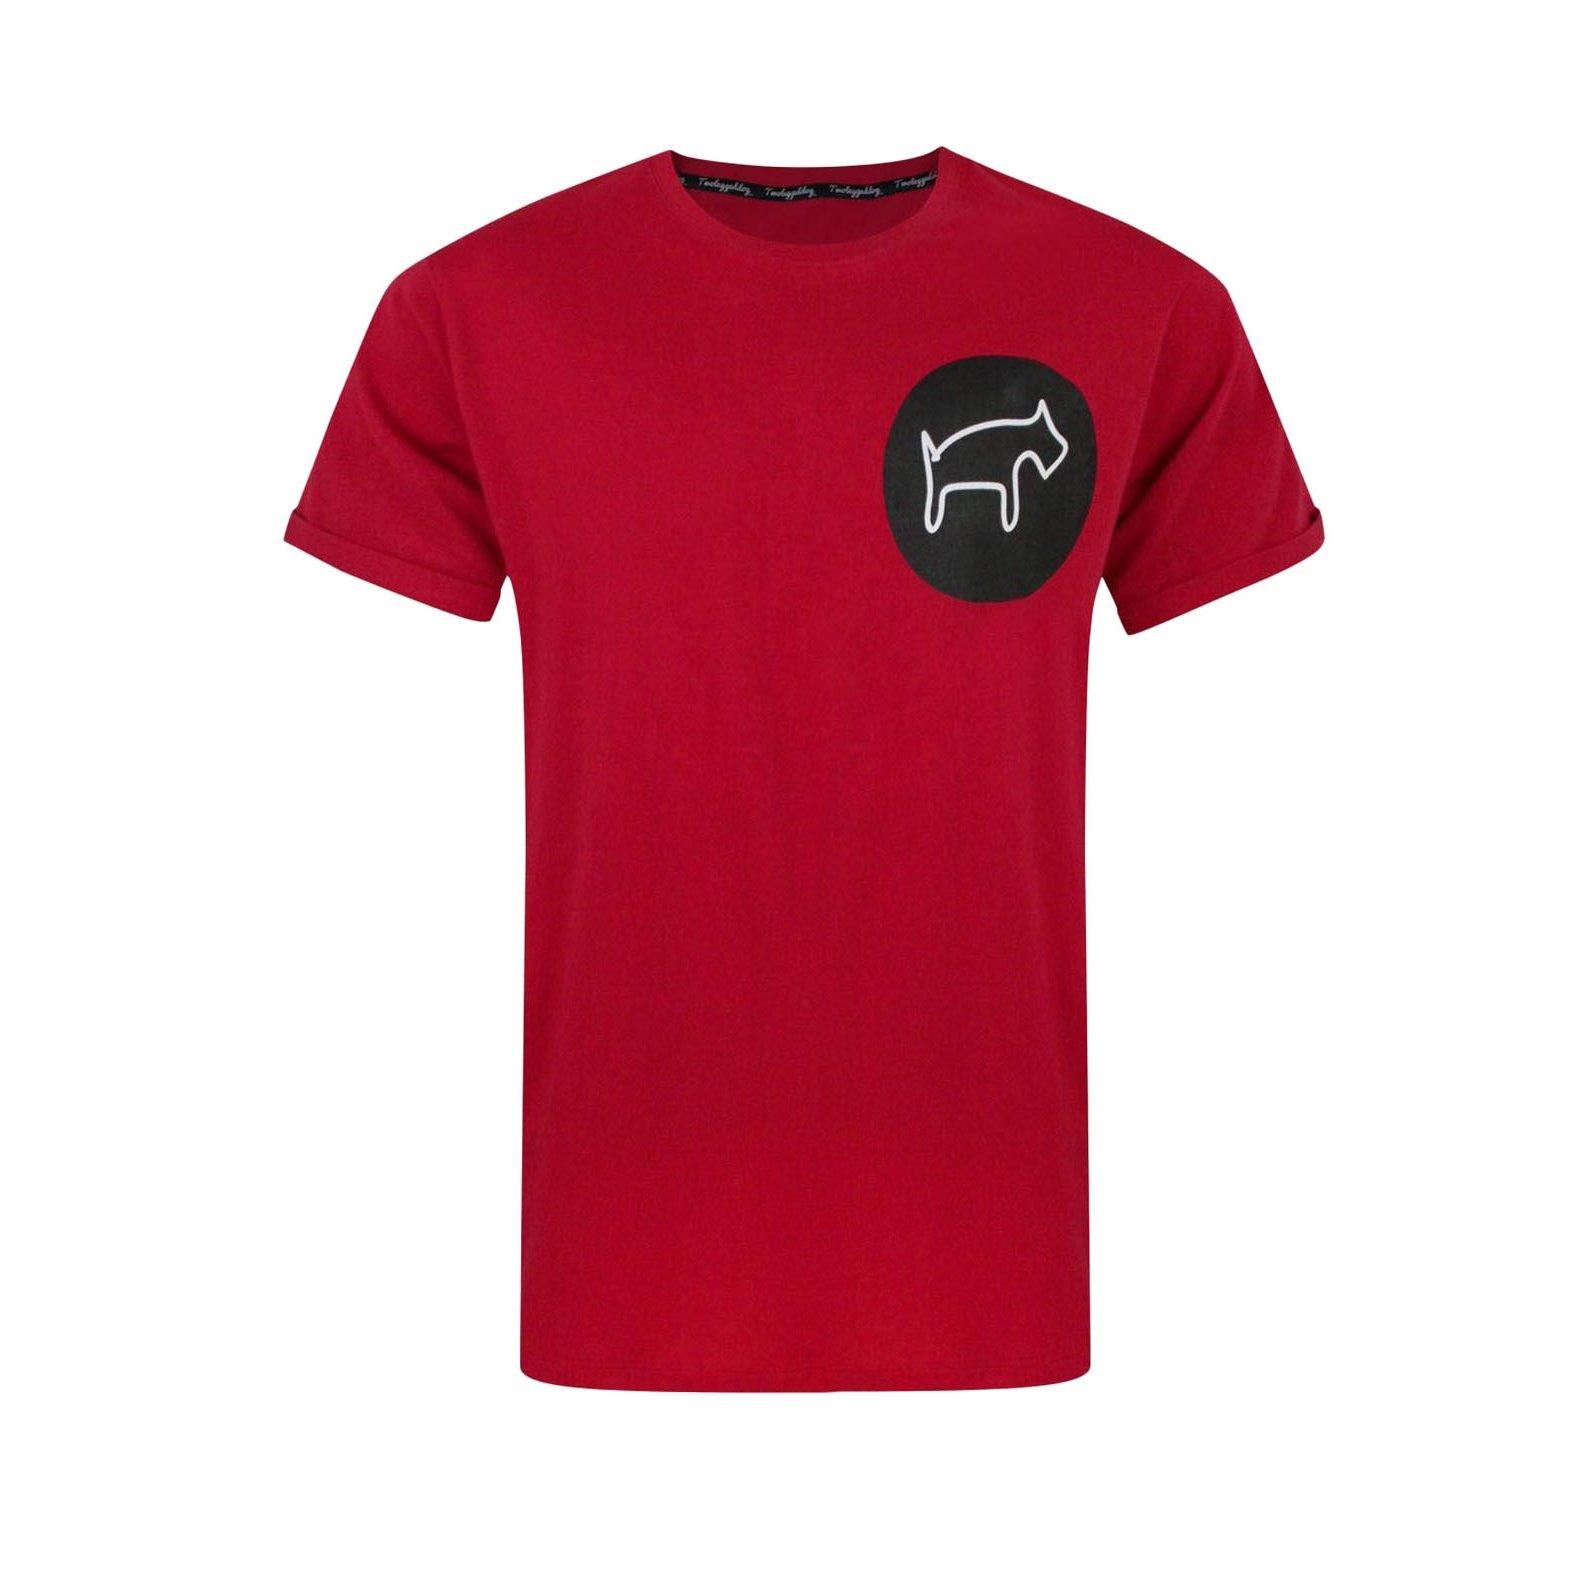 T-shirt Herren Rot Bunt L von Two Legged Dog